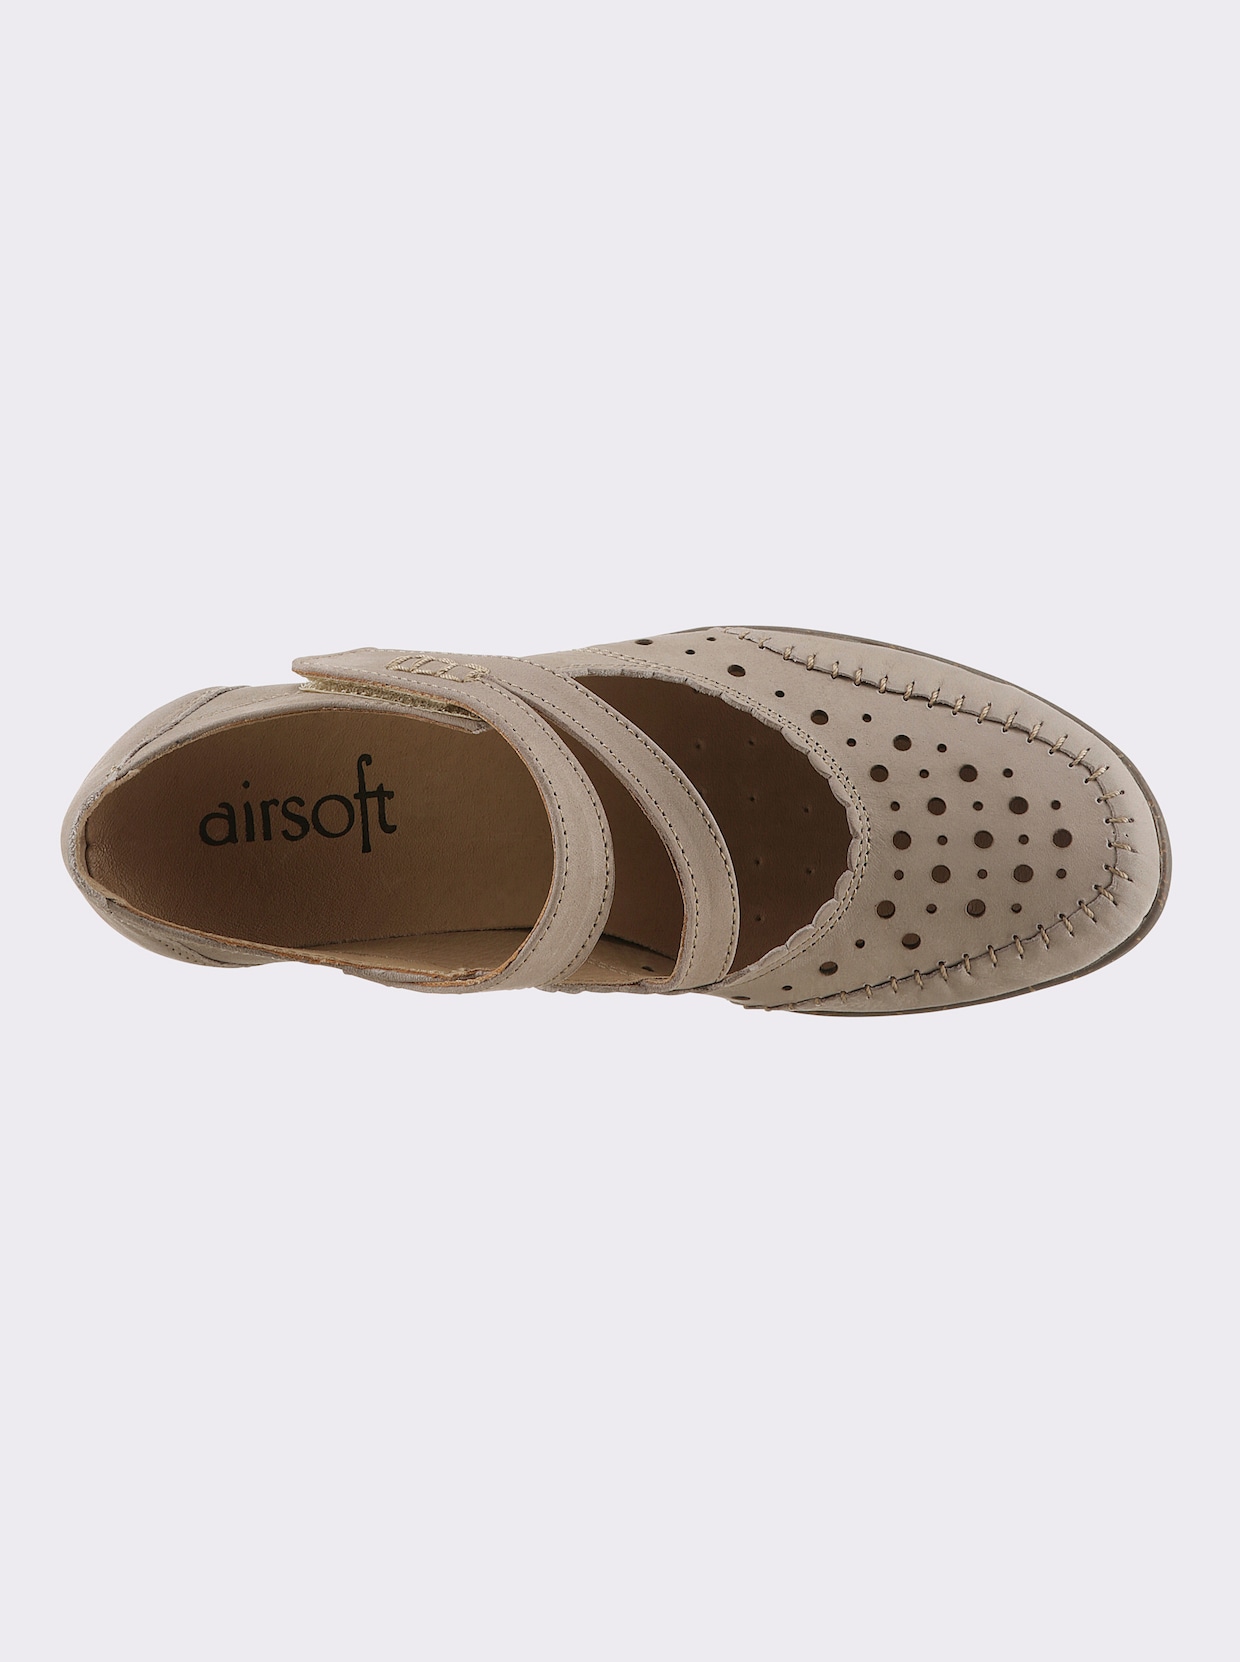 airsoft comfort+ Topánky so zapínaním na suchý zips - hnedosivá